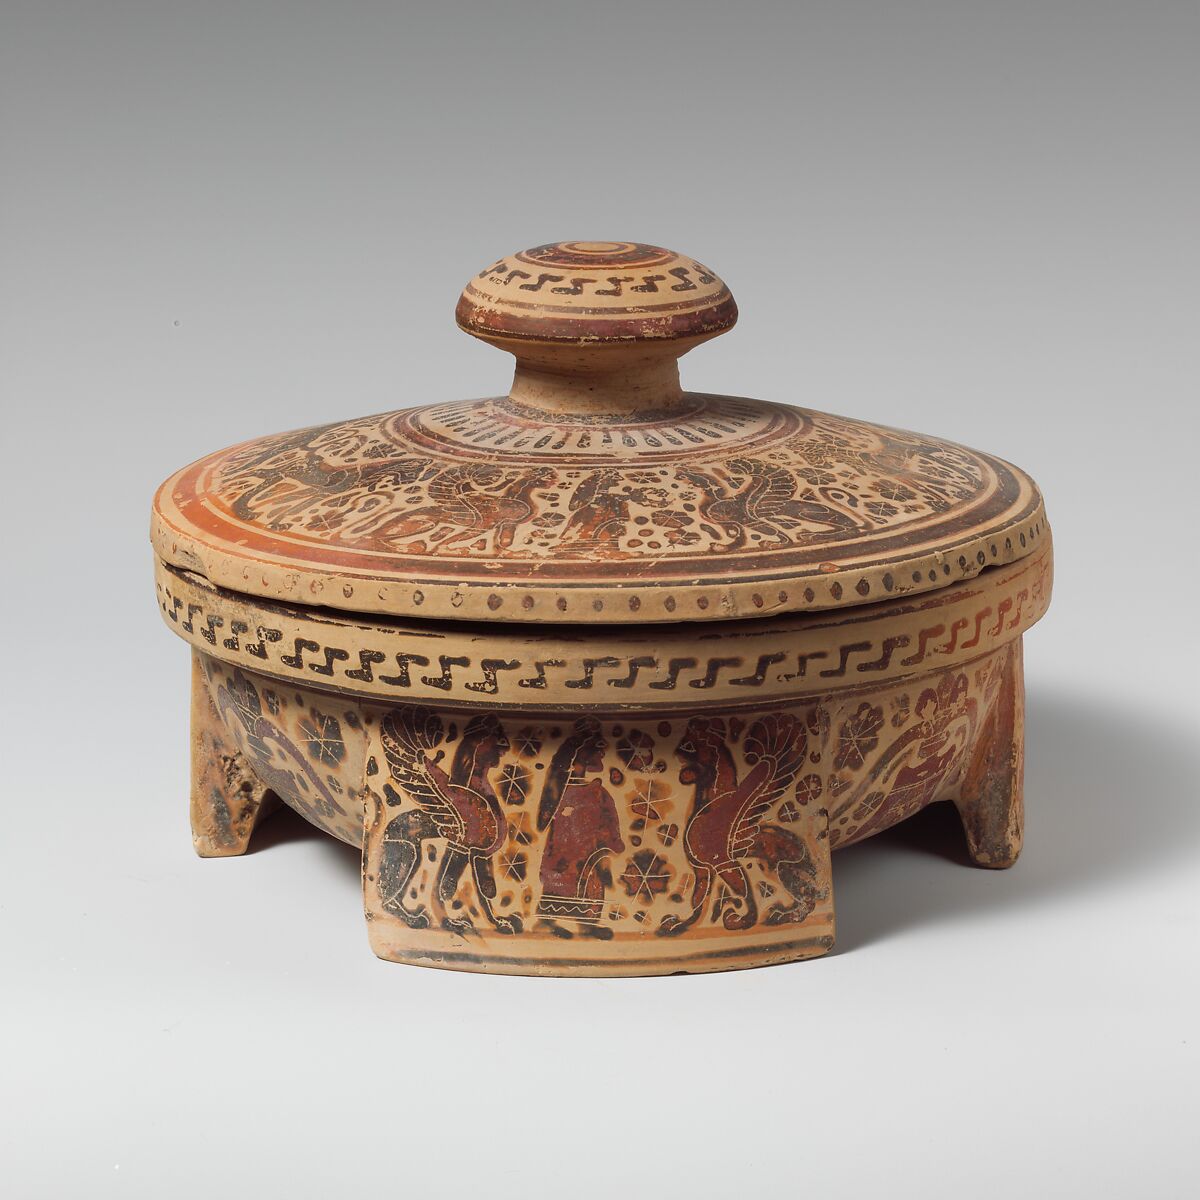 Terracotta tripod pyxis (box), Terracotta, Greek, Corinthian 